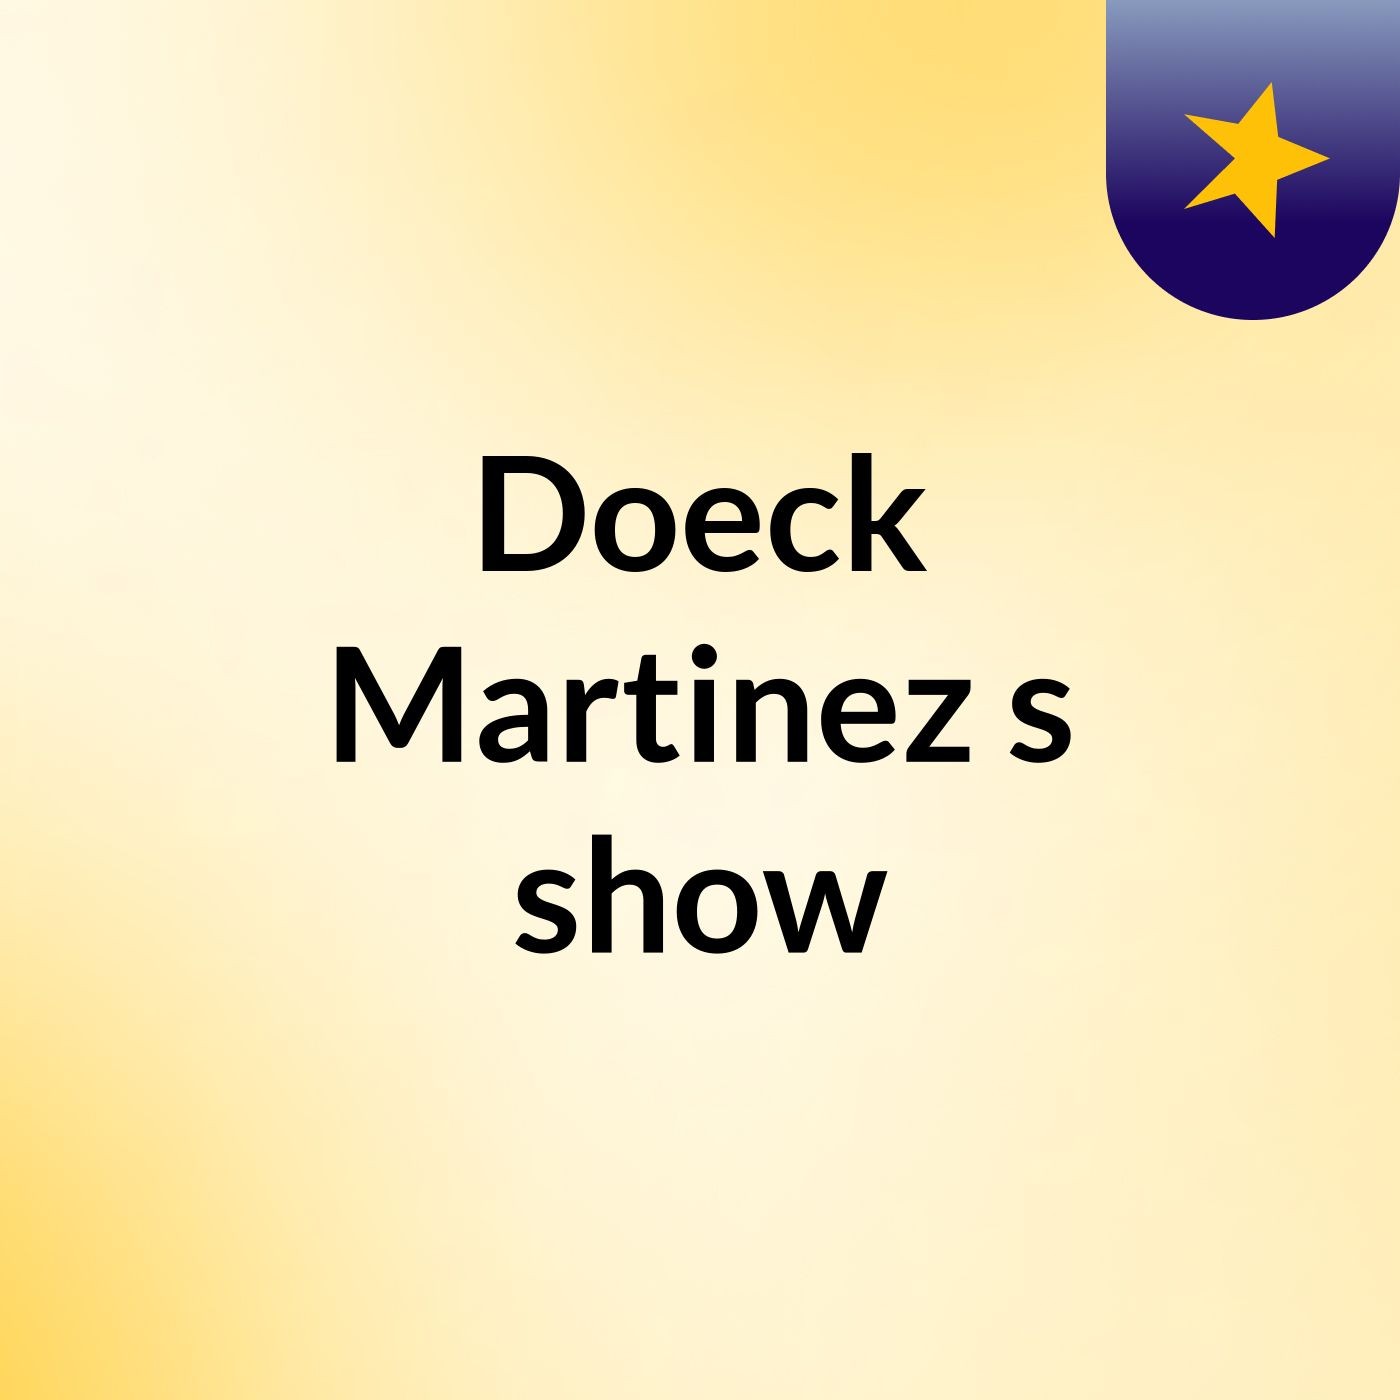 Doeck Martinez's show